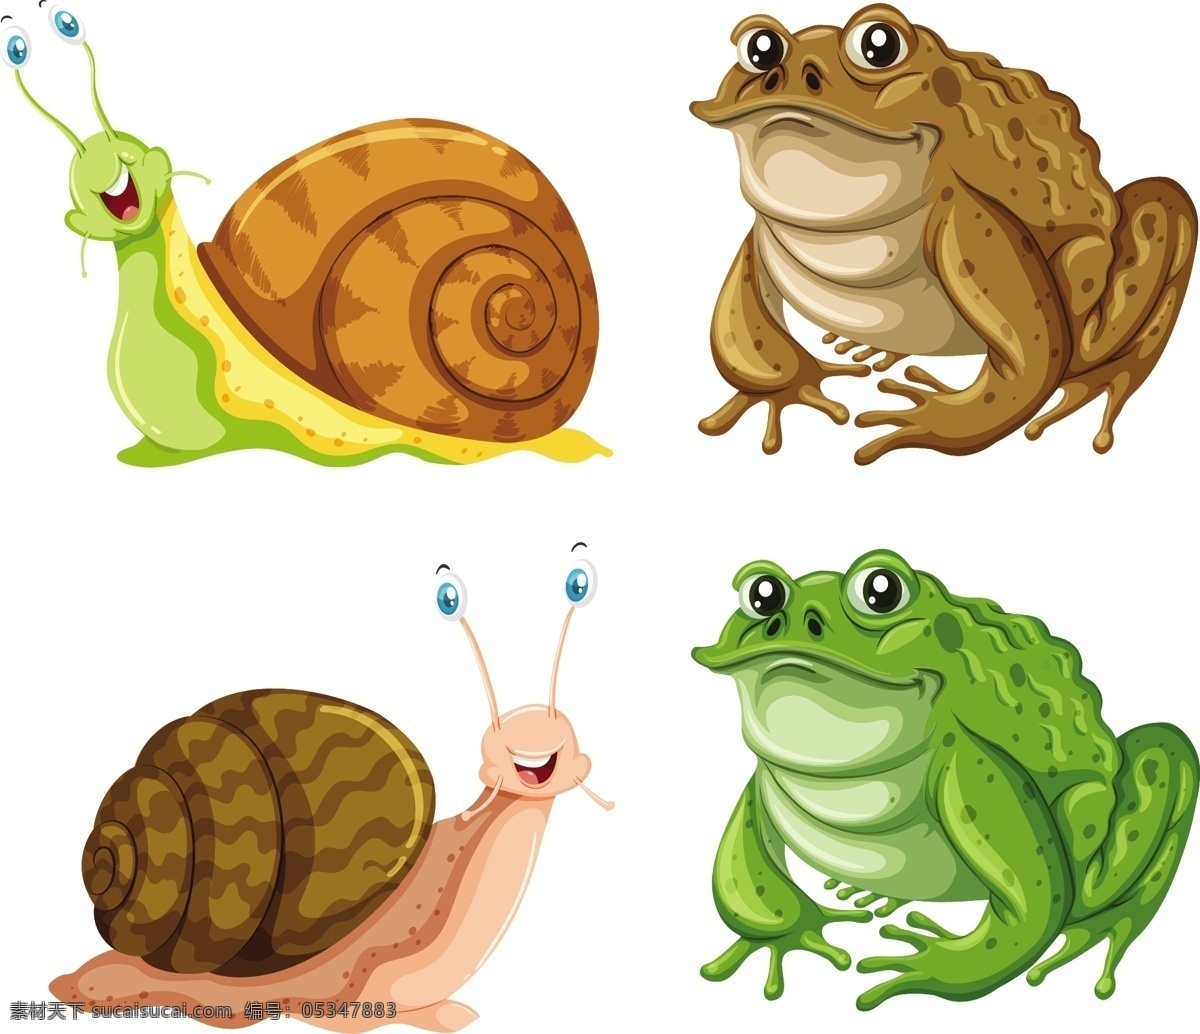 青蛙 蜗牛 癞蛤蟆 插图 矢量 癞蛤蟆插图 矢量素材 卡通动物 动物卡通 手机壳 图案 卡通动物素材 卡通 小 动物图片 可爱 动物